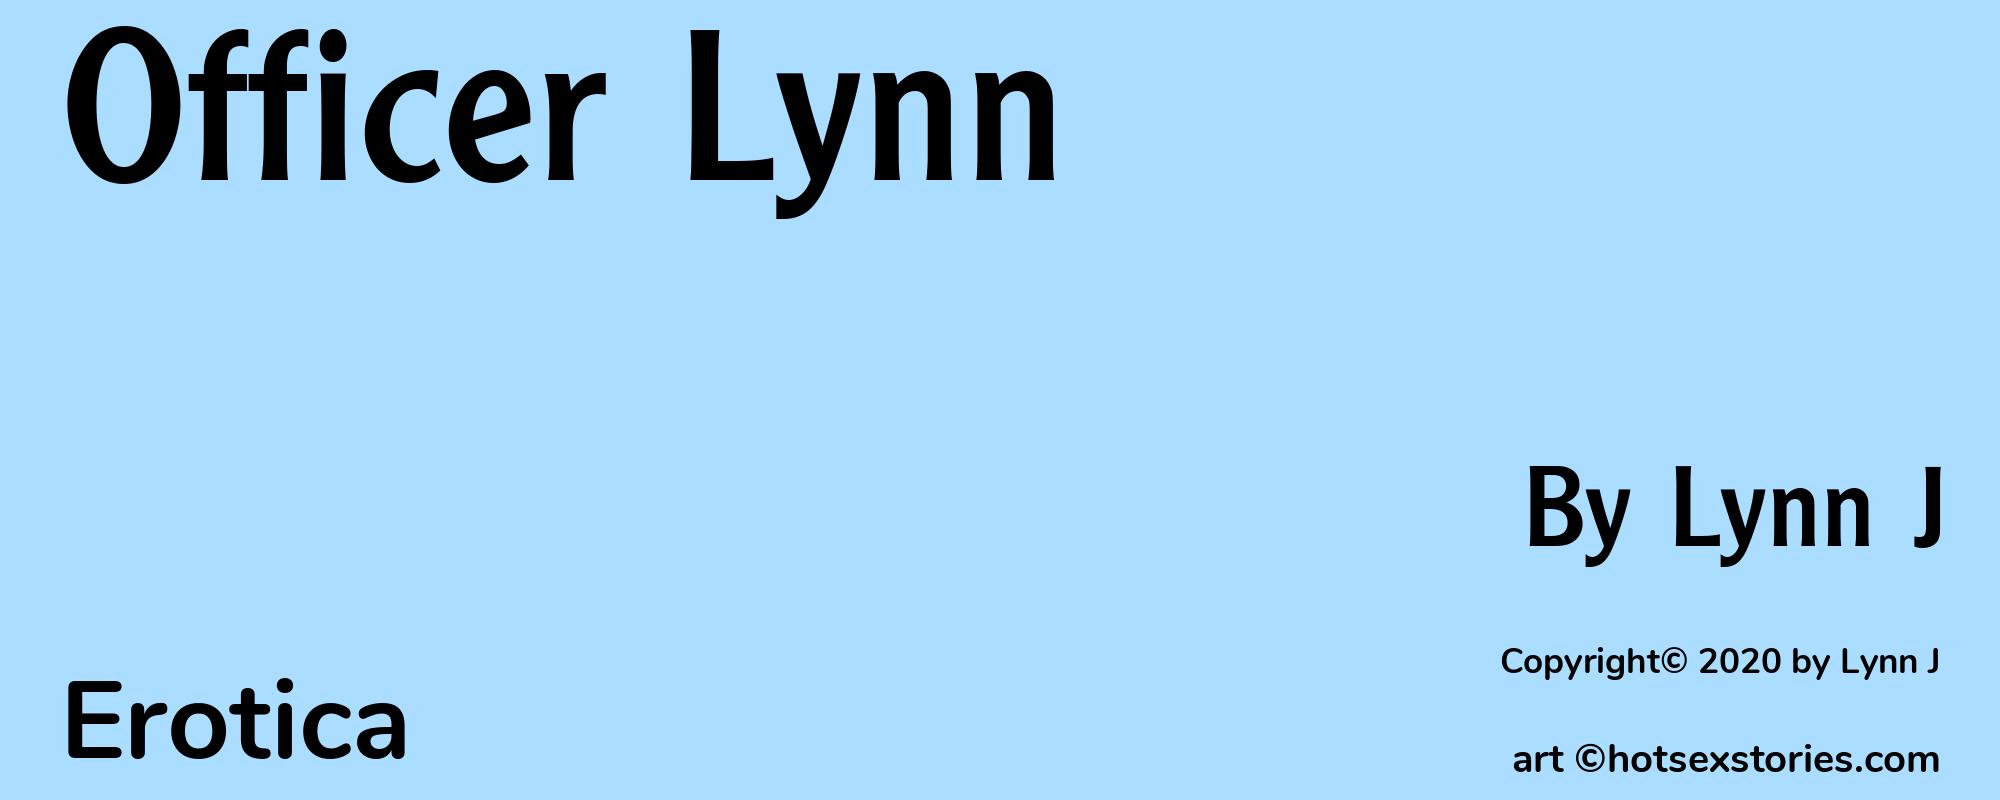 Officer Lynn - Cover